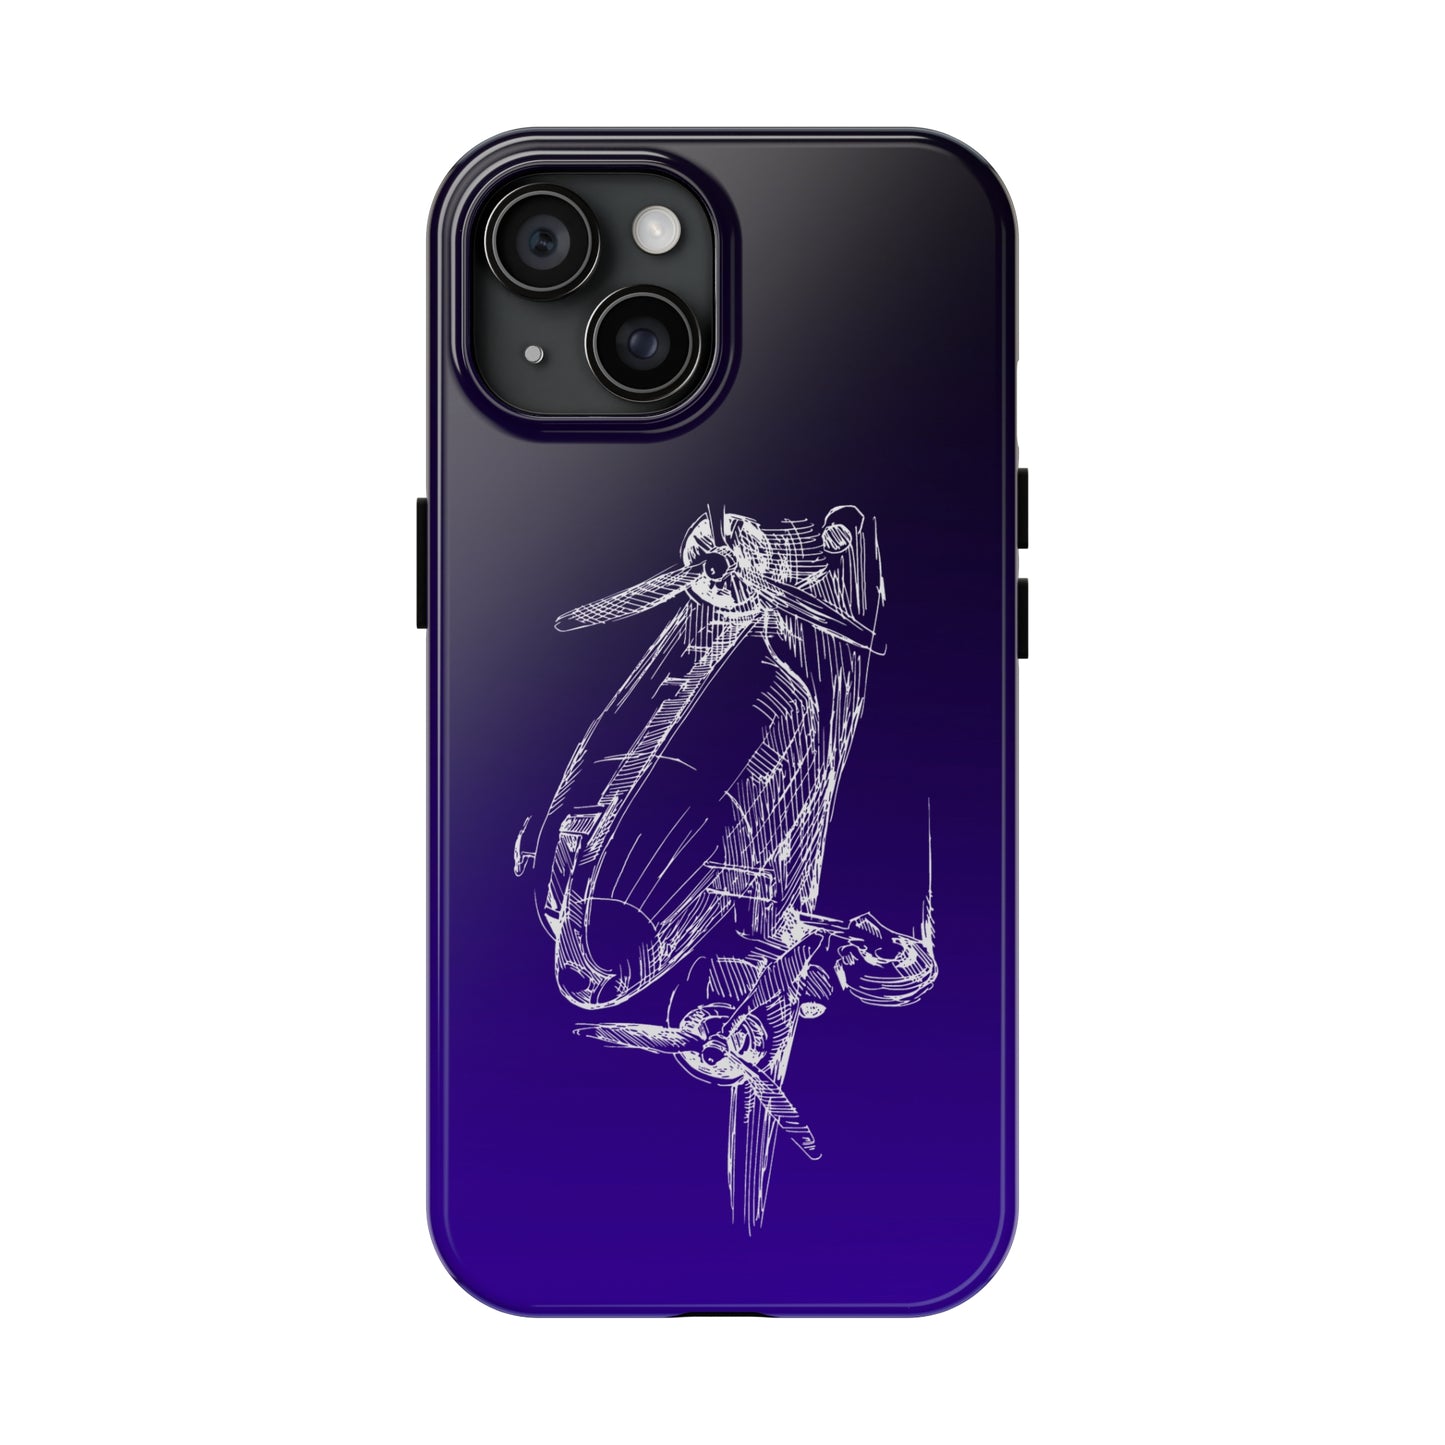 Aero 1 (purple) tough phone cases